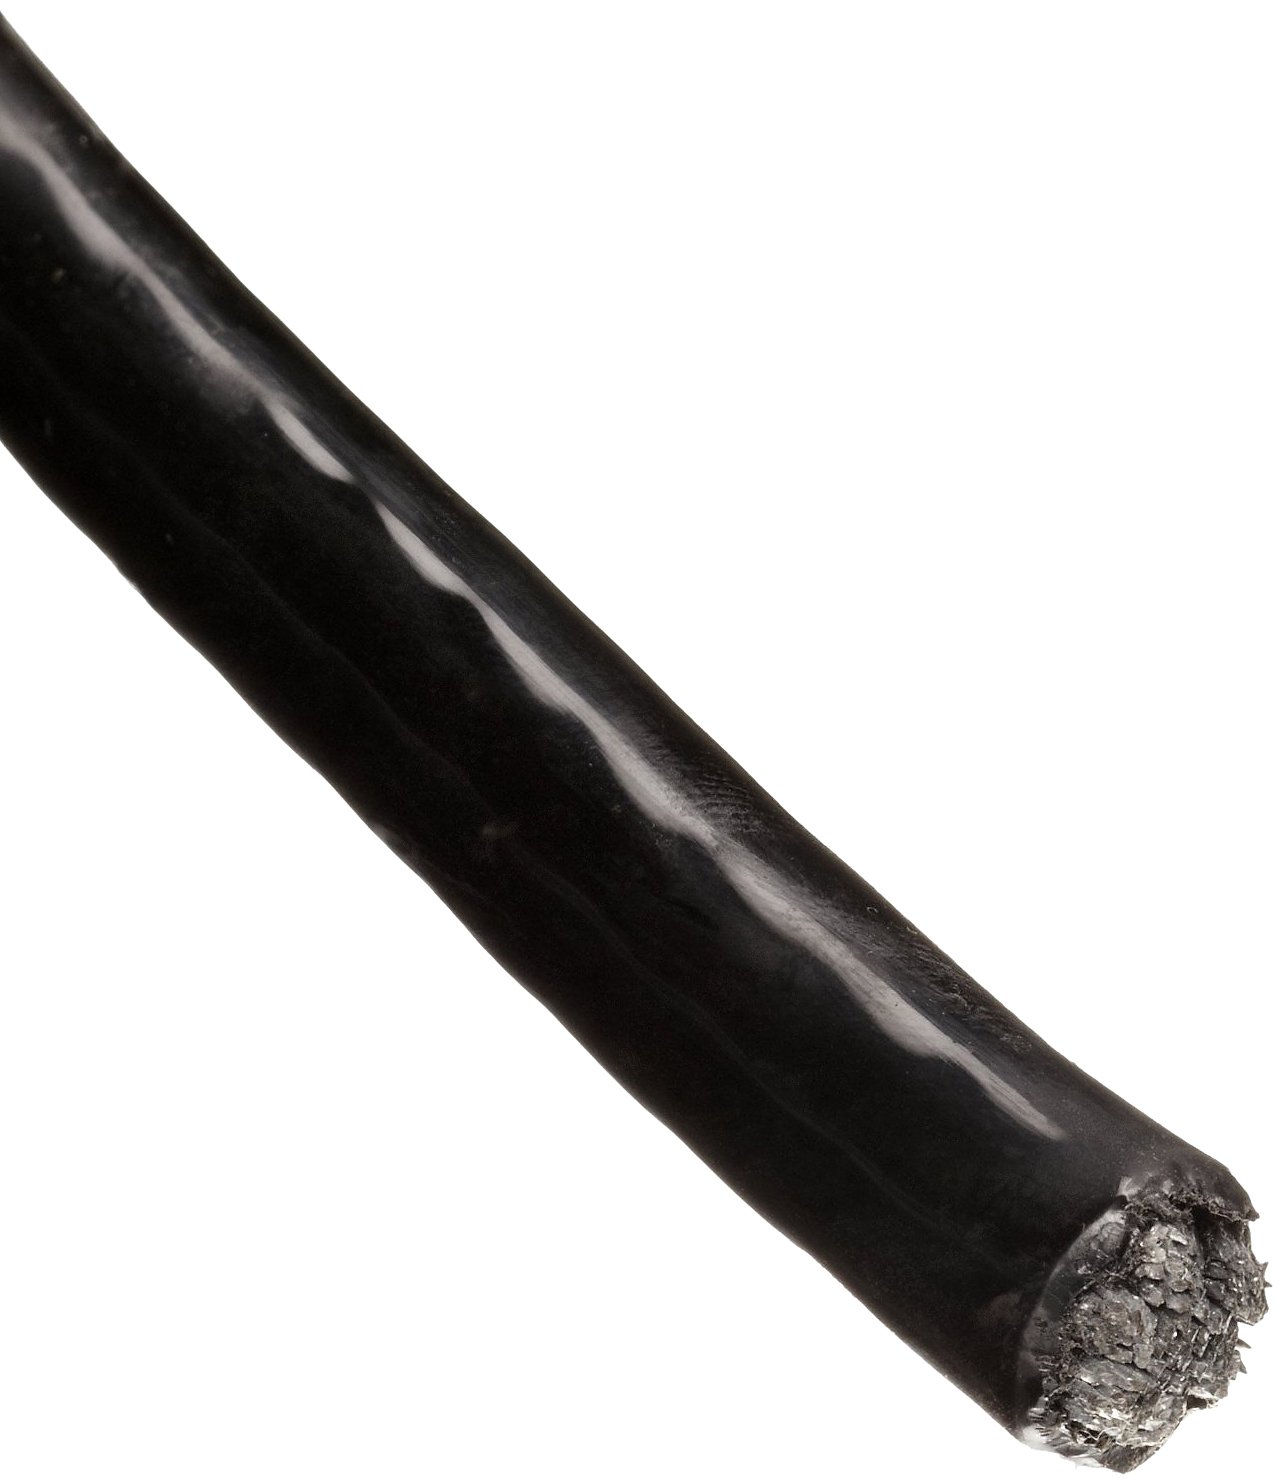 Трос в ПВХ оболочке 3 мм непрозрачный черный - фото